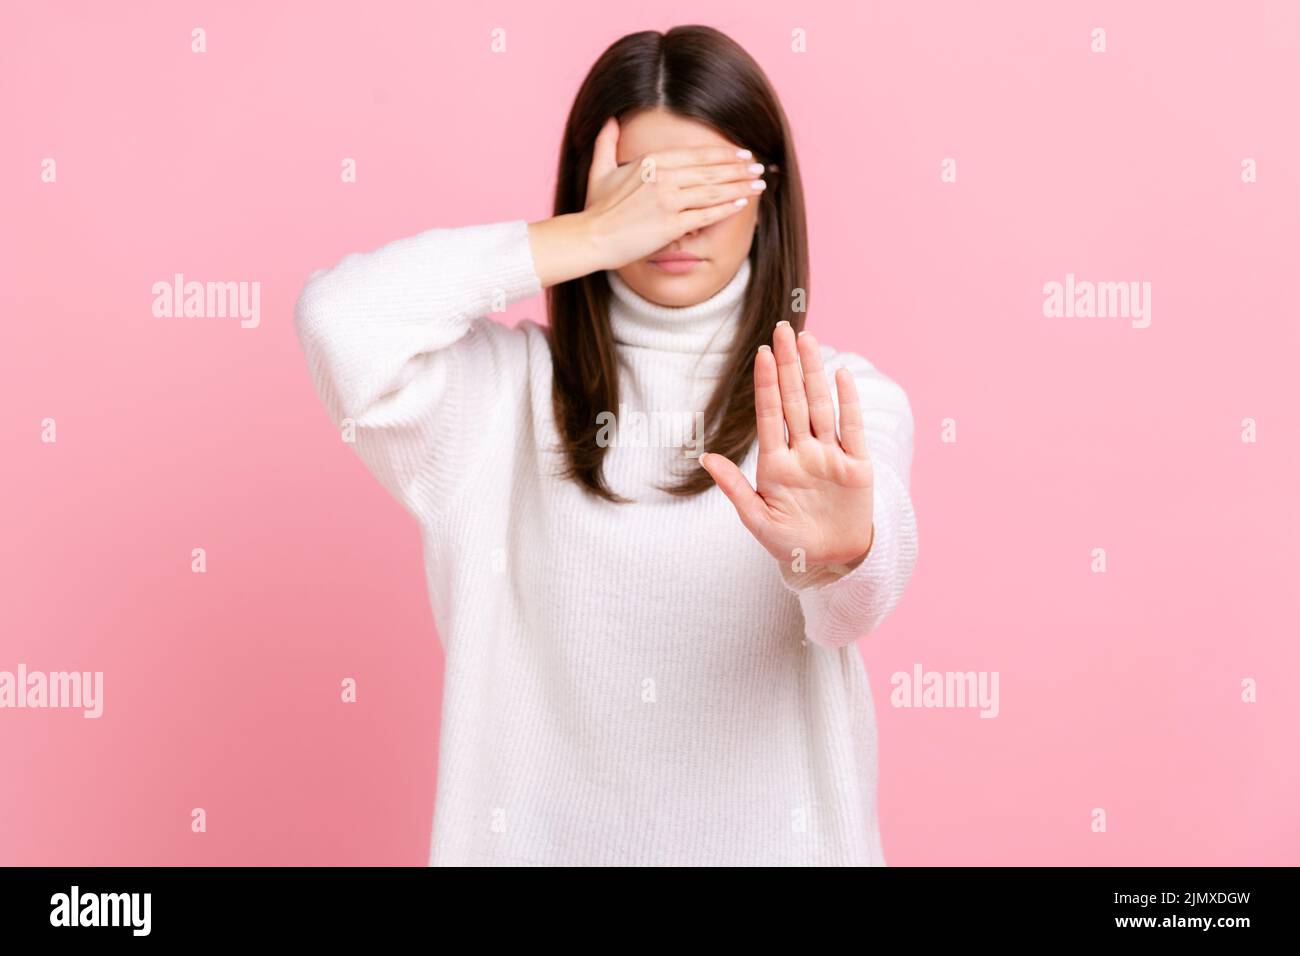 Mujer confusa cubre los ojos, levantando la mano para parar, sintiéndose estresado, negándose a ver contenido de miedo, usando suéter blanco de estilo casual. Estudio de interior grabado aislado sobre fondo rosa. Foto de stock